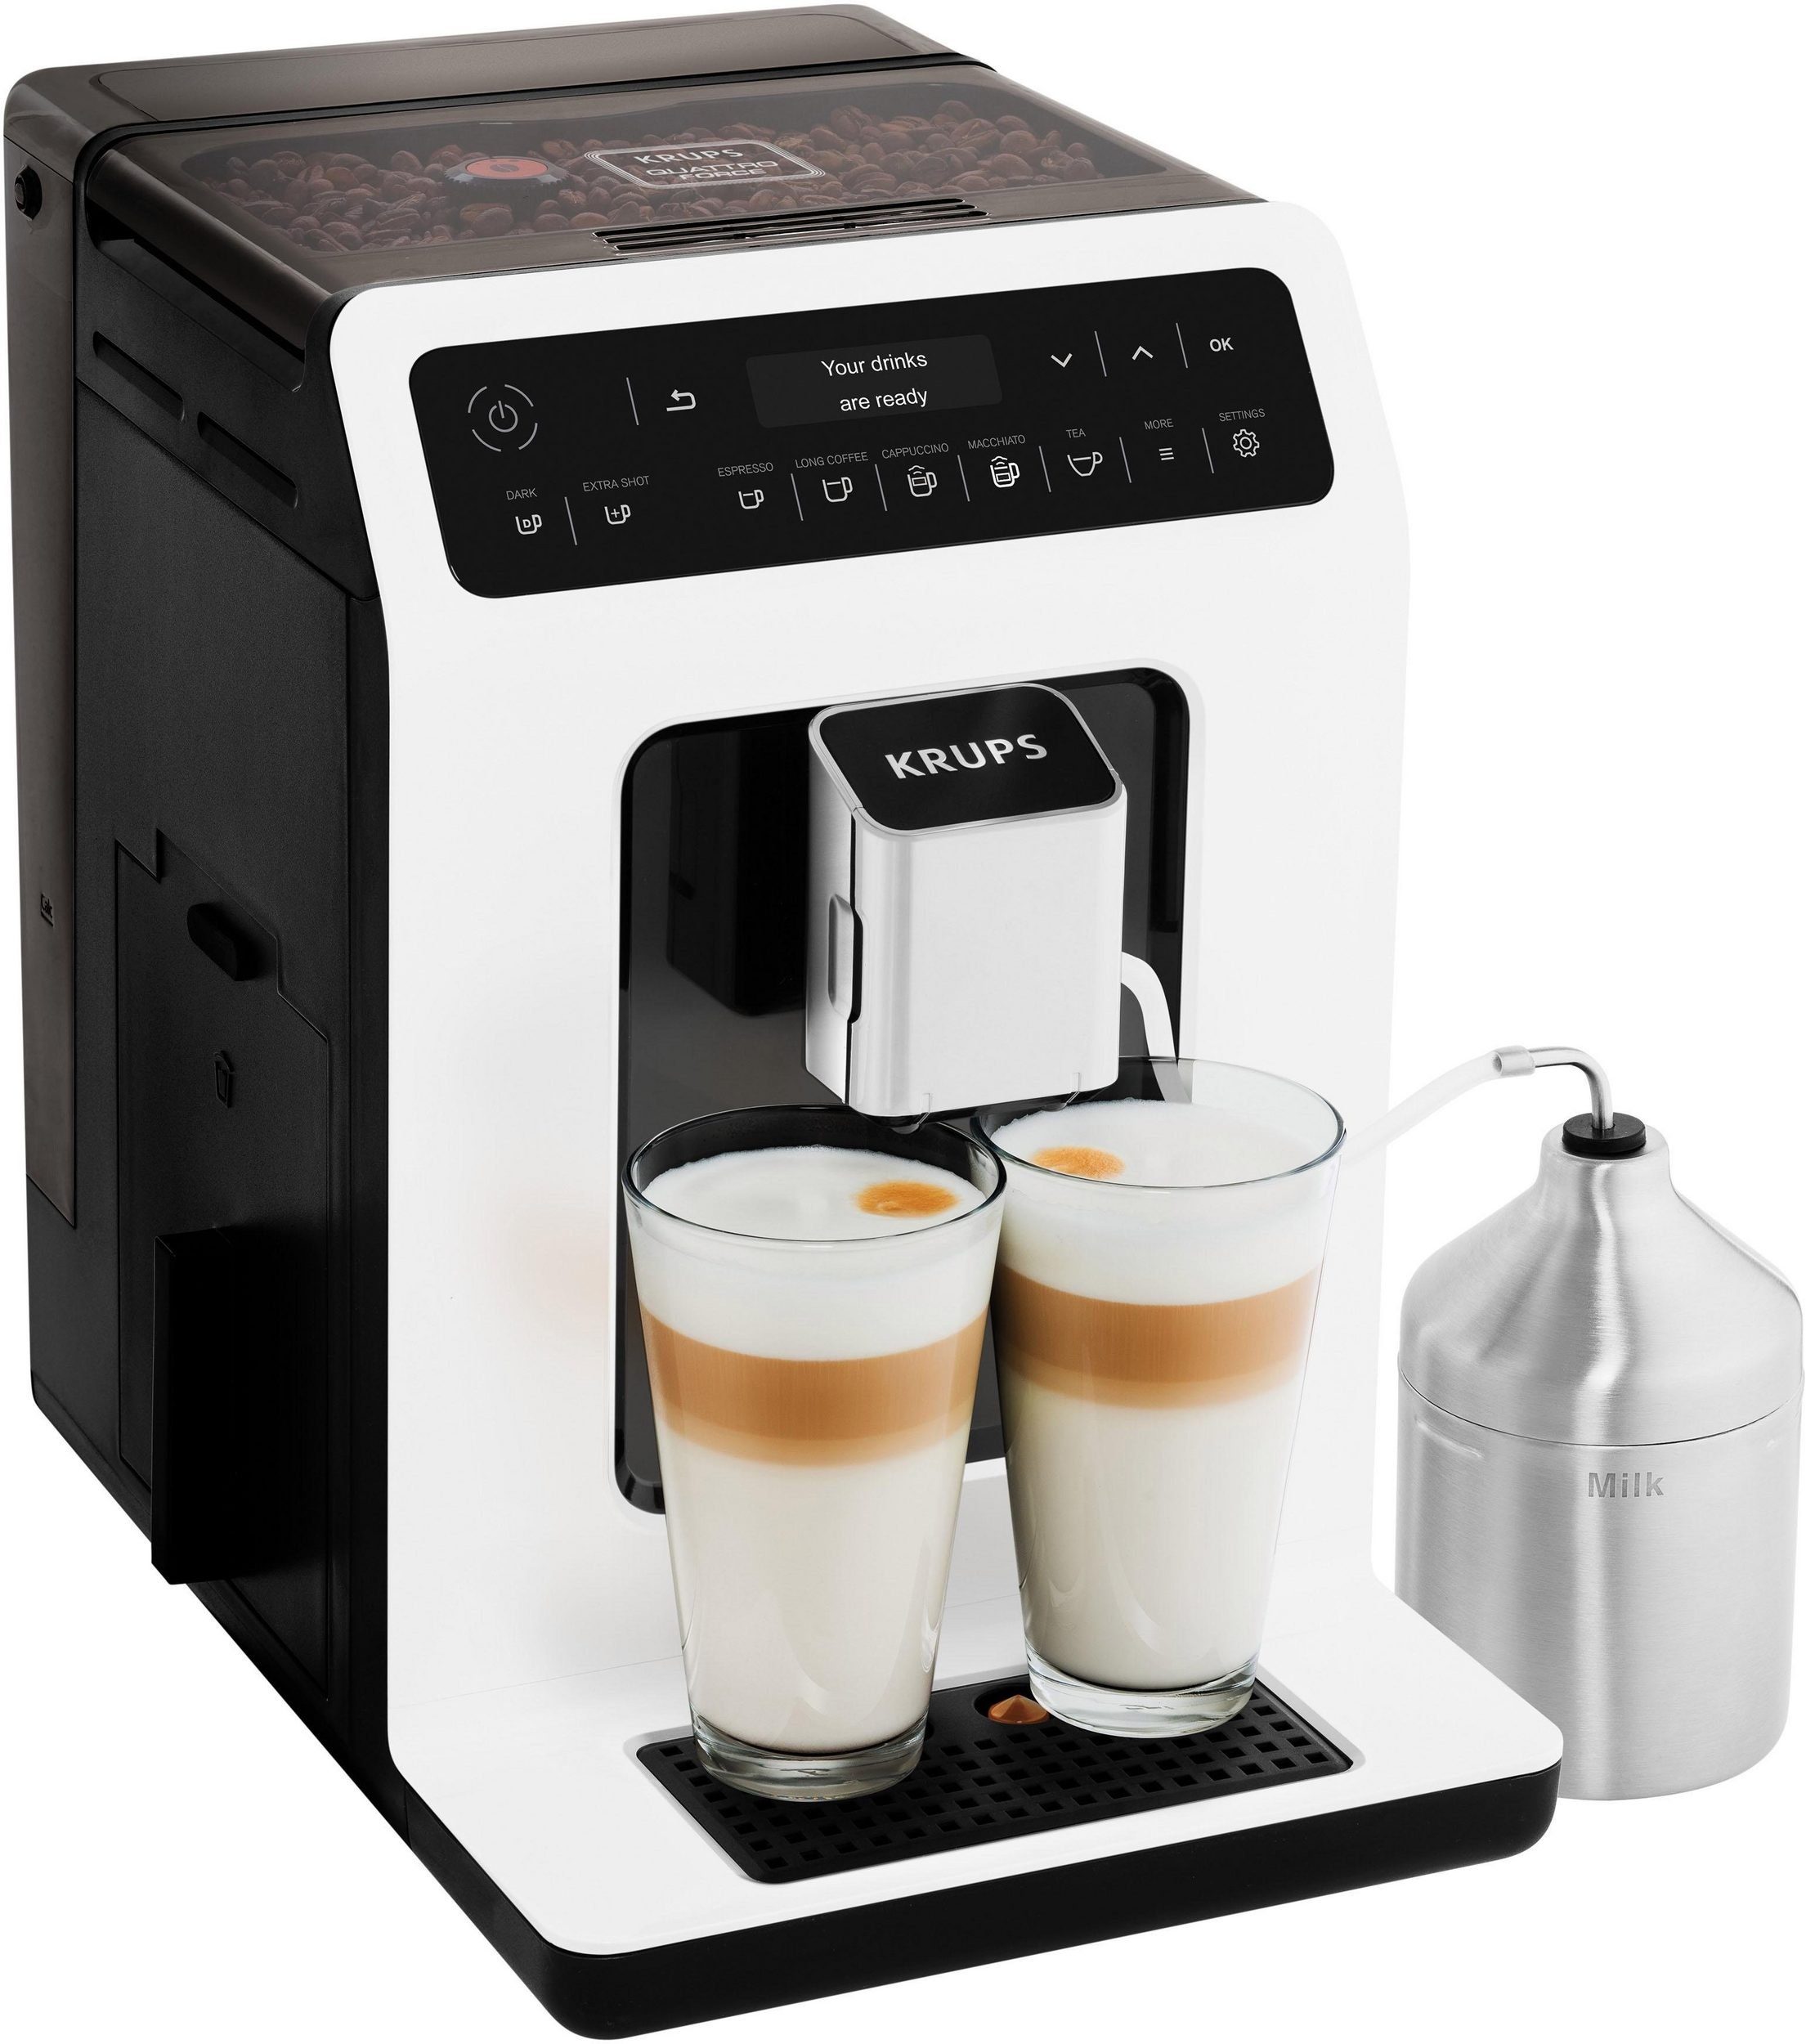 Krups Kaffeevollautomat Evidence, Milchbehälter inkl. EA8911 Kaffeevollautomat